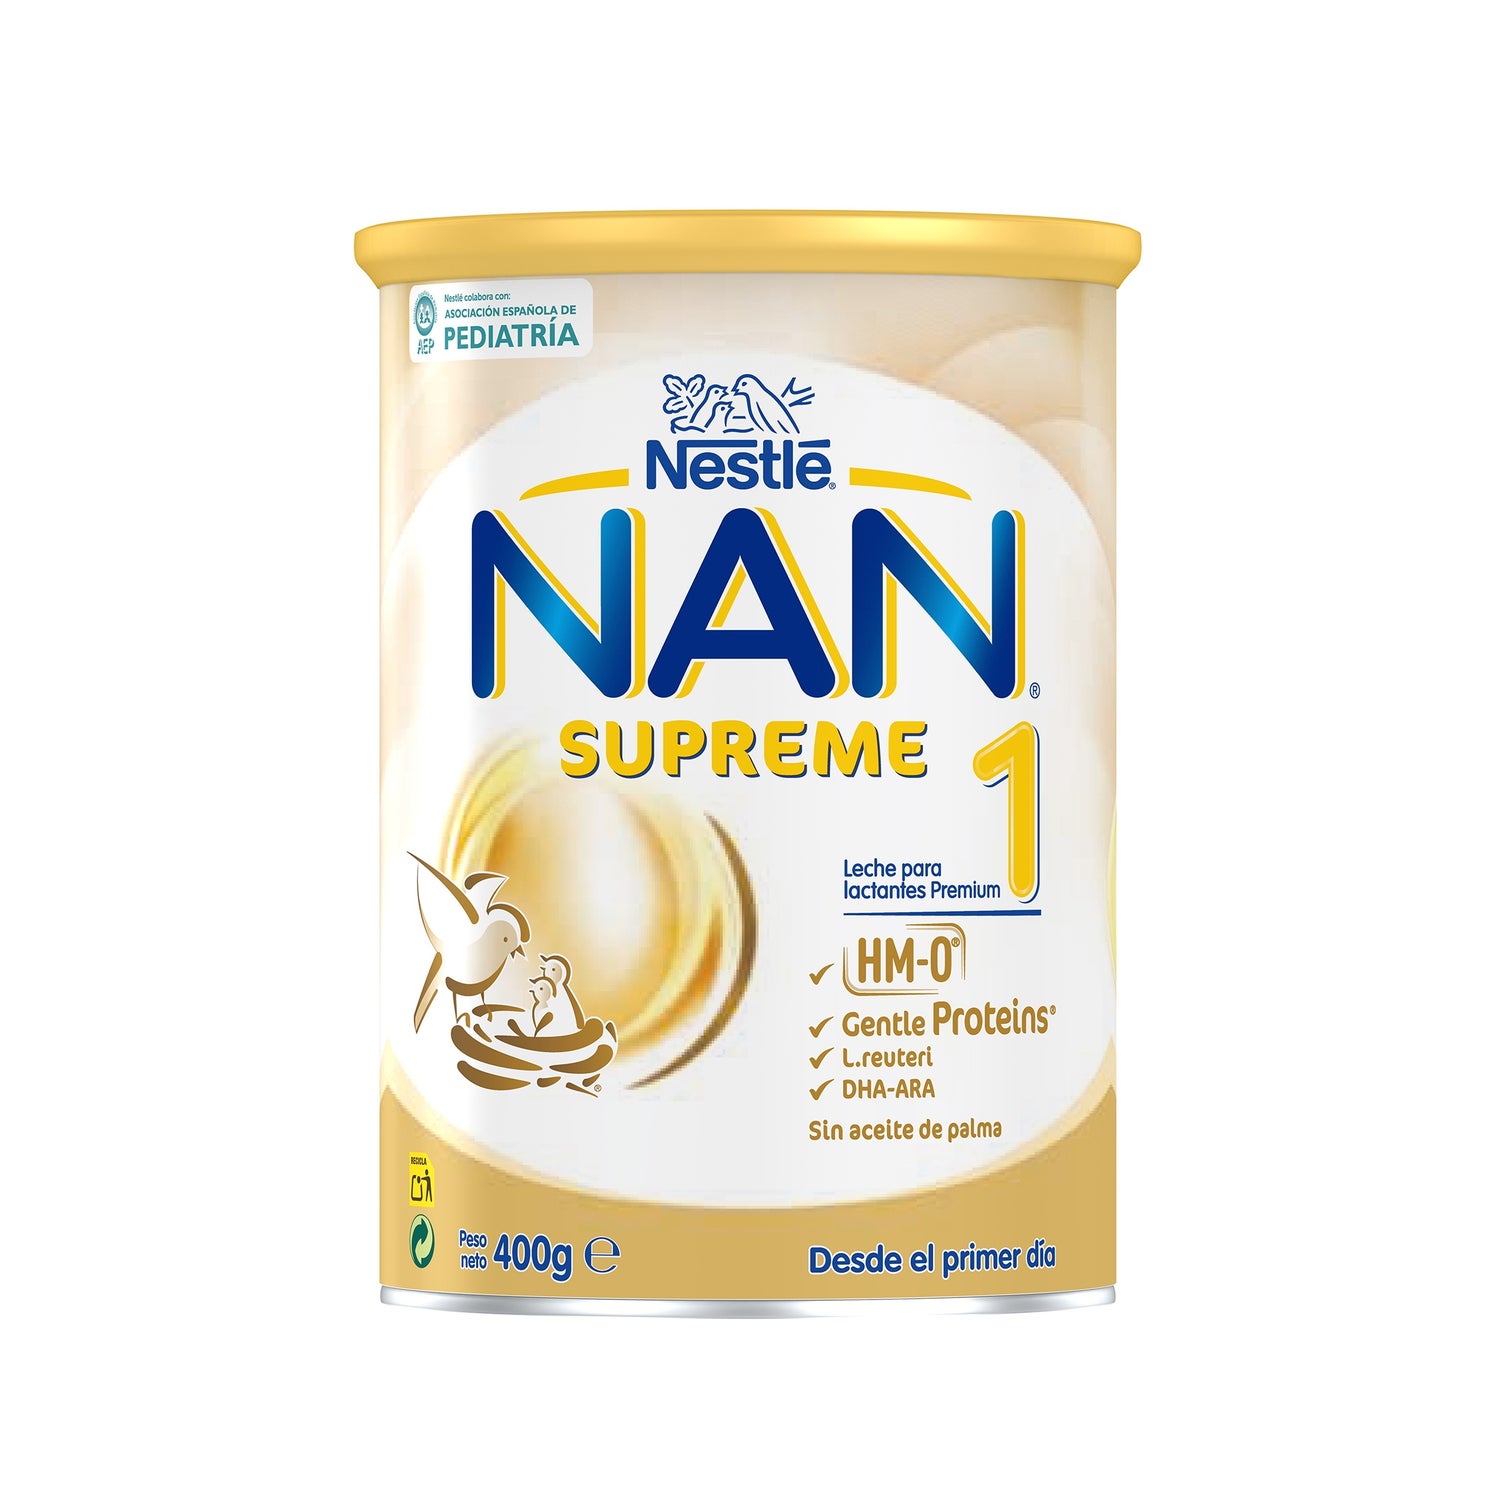 NestlÃ¨ Nan Supreme Pro 2 Follow-on Milk 300ml